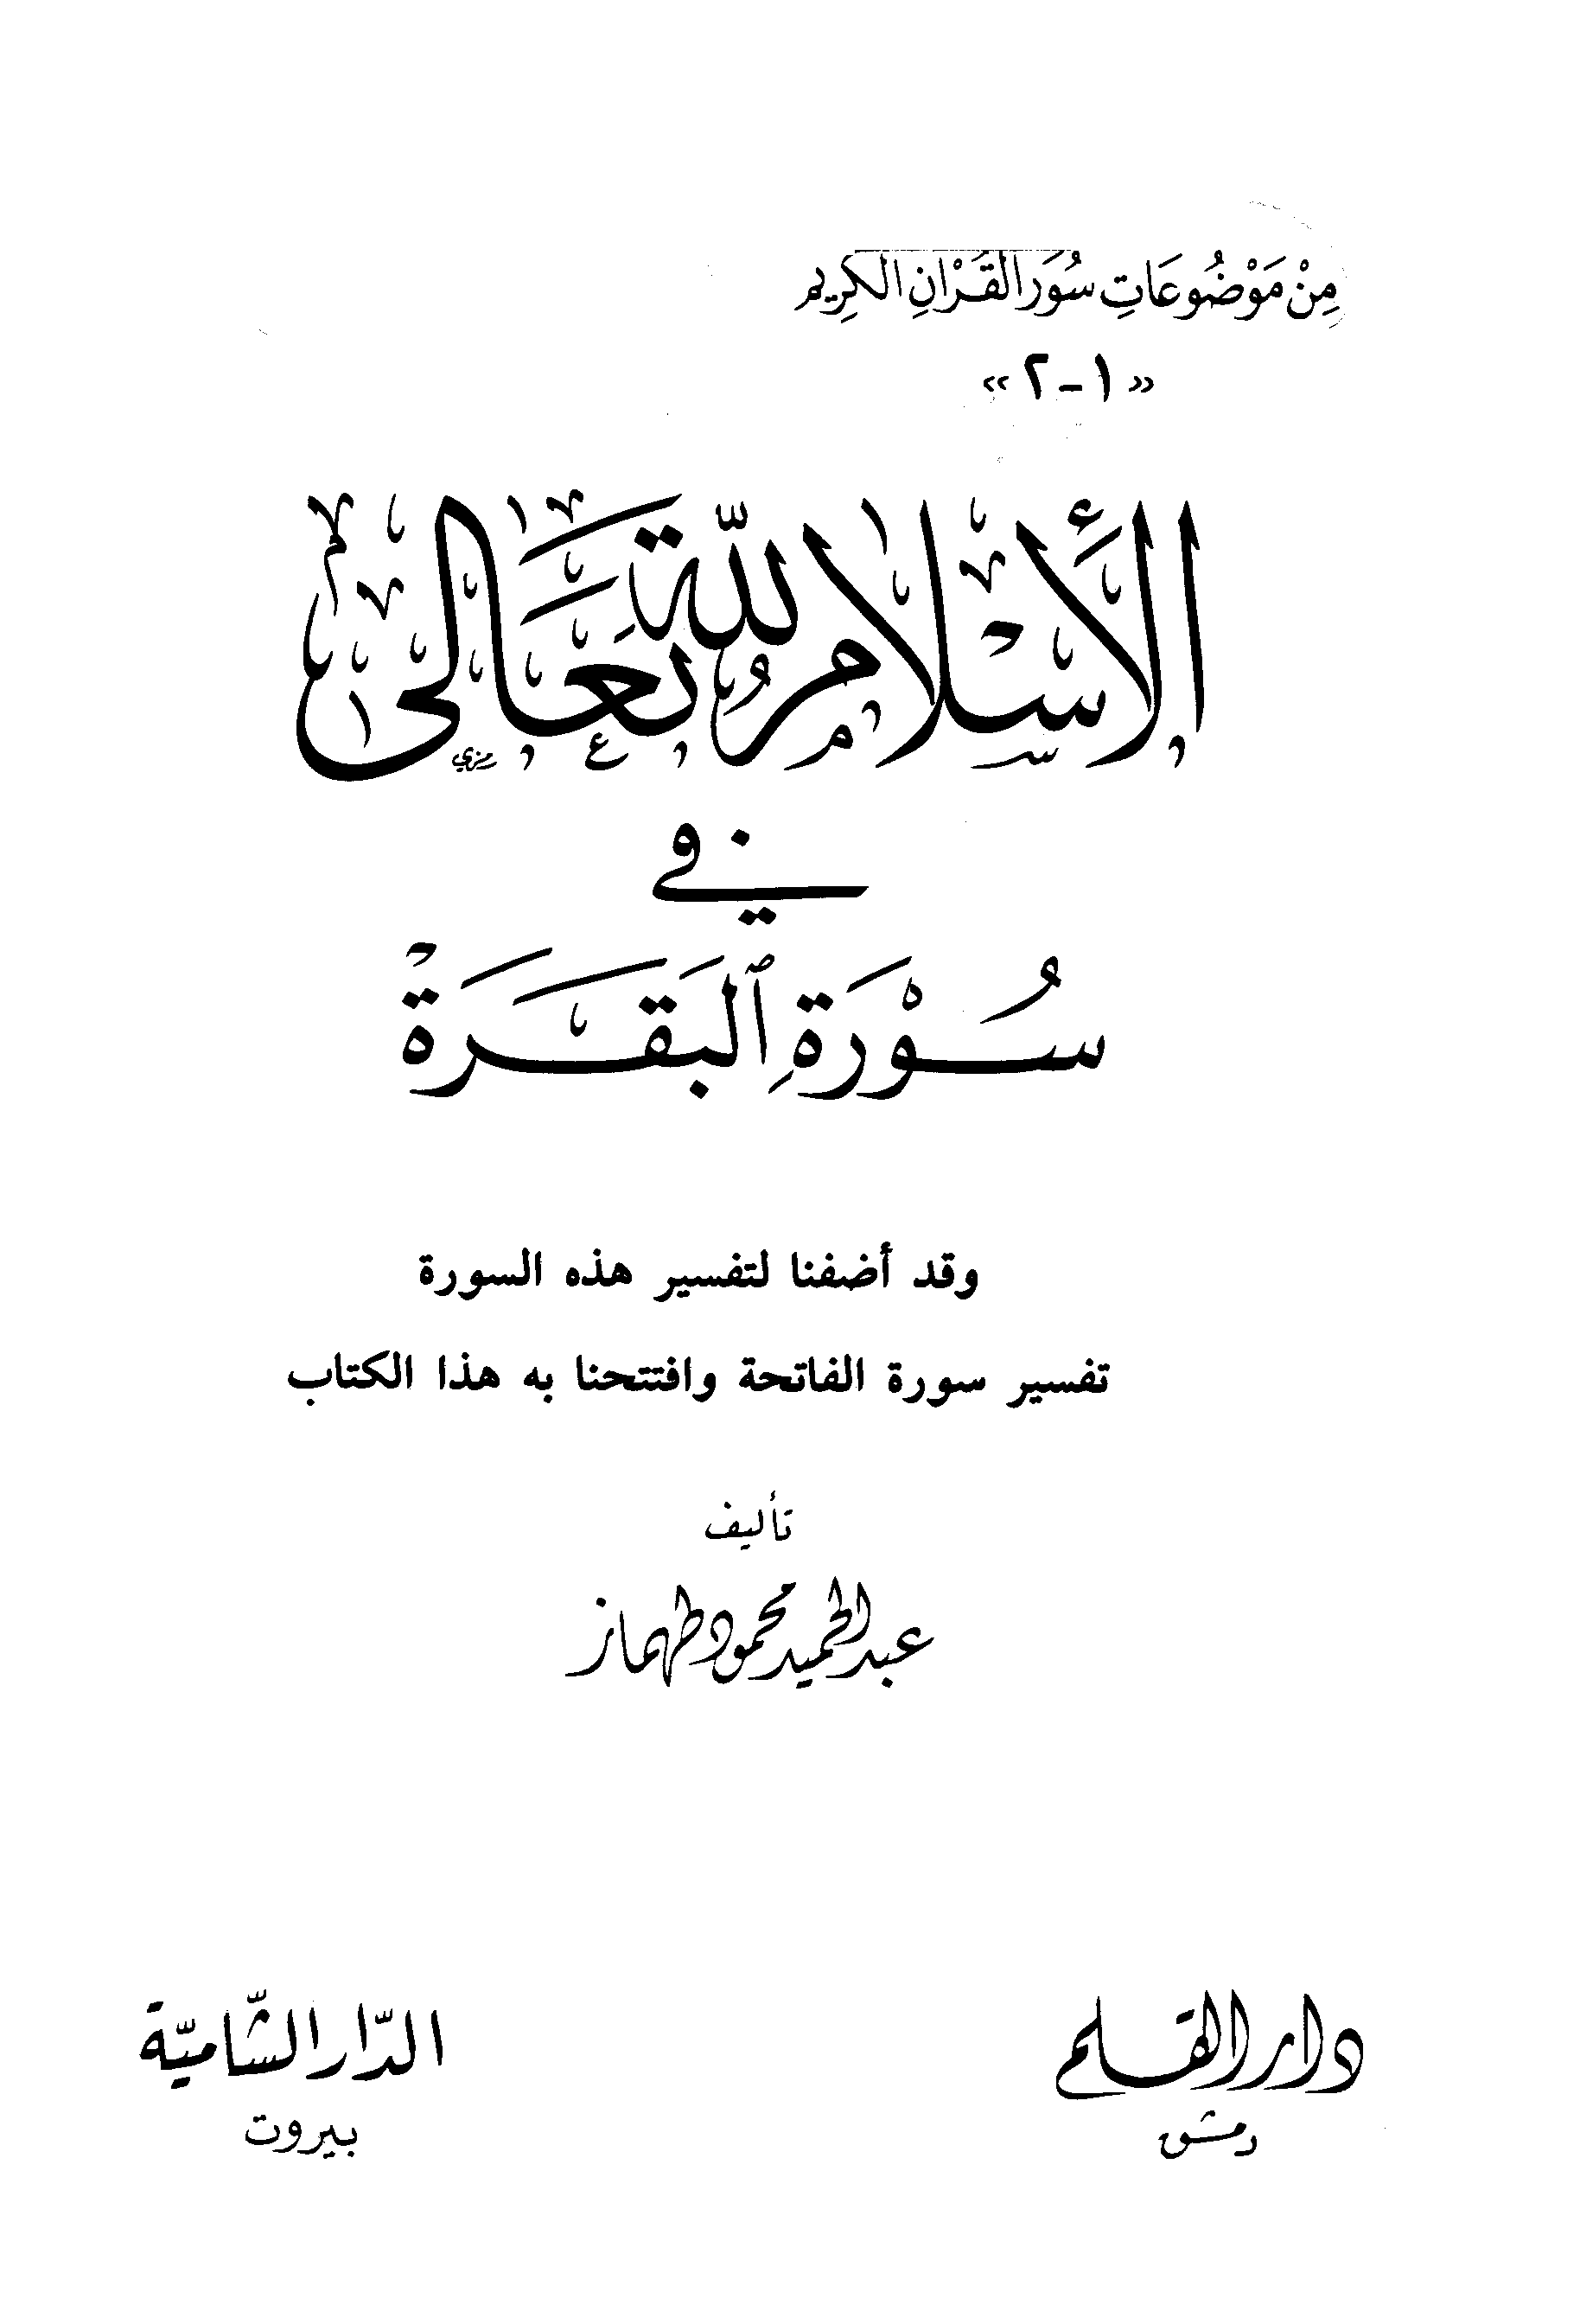 تحميل كتاب الإسلام لله تعالى في سورة البقرة للمؤلف: الشيخ عبد الحميد بن محمود بن عبد القادر طهماز (ت 1431)